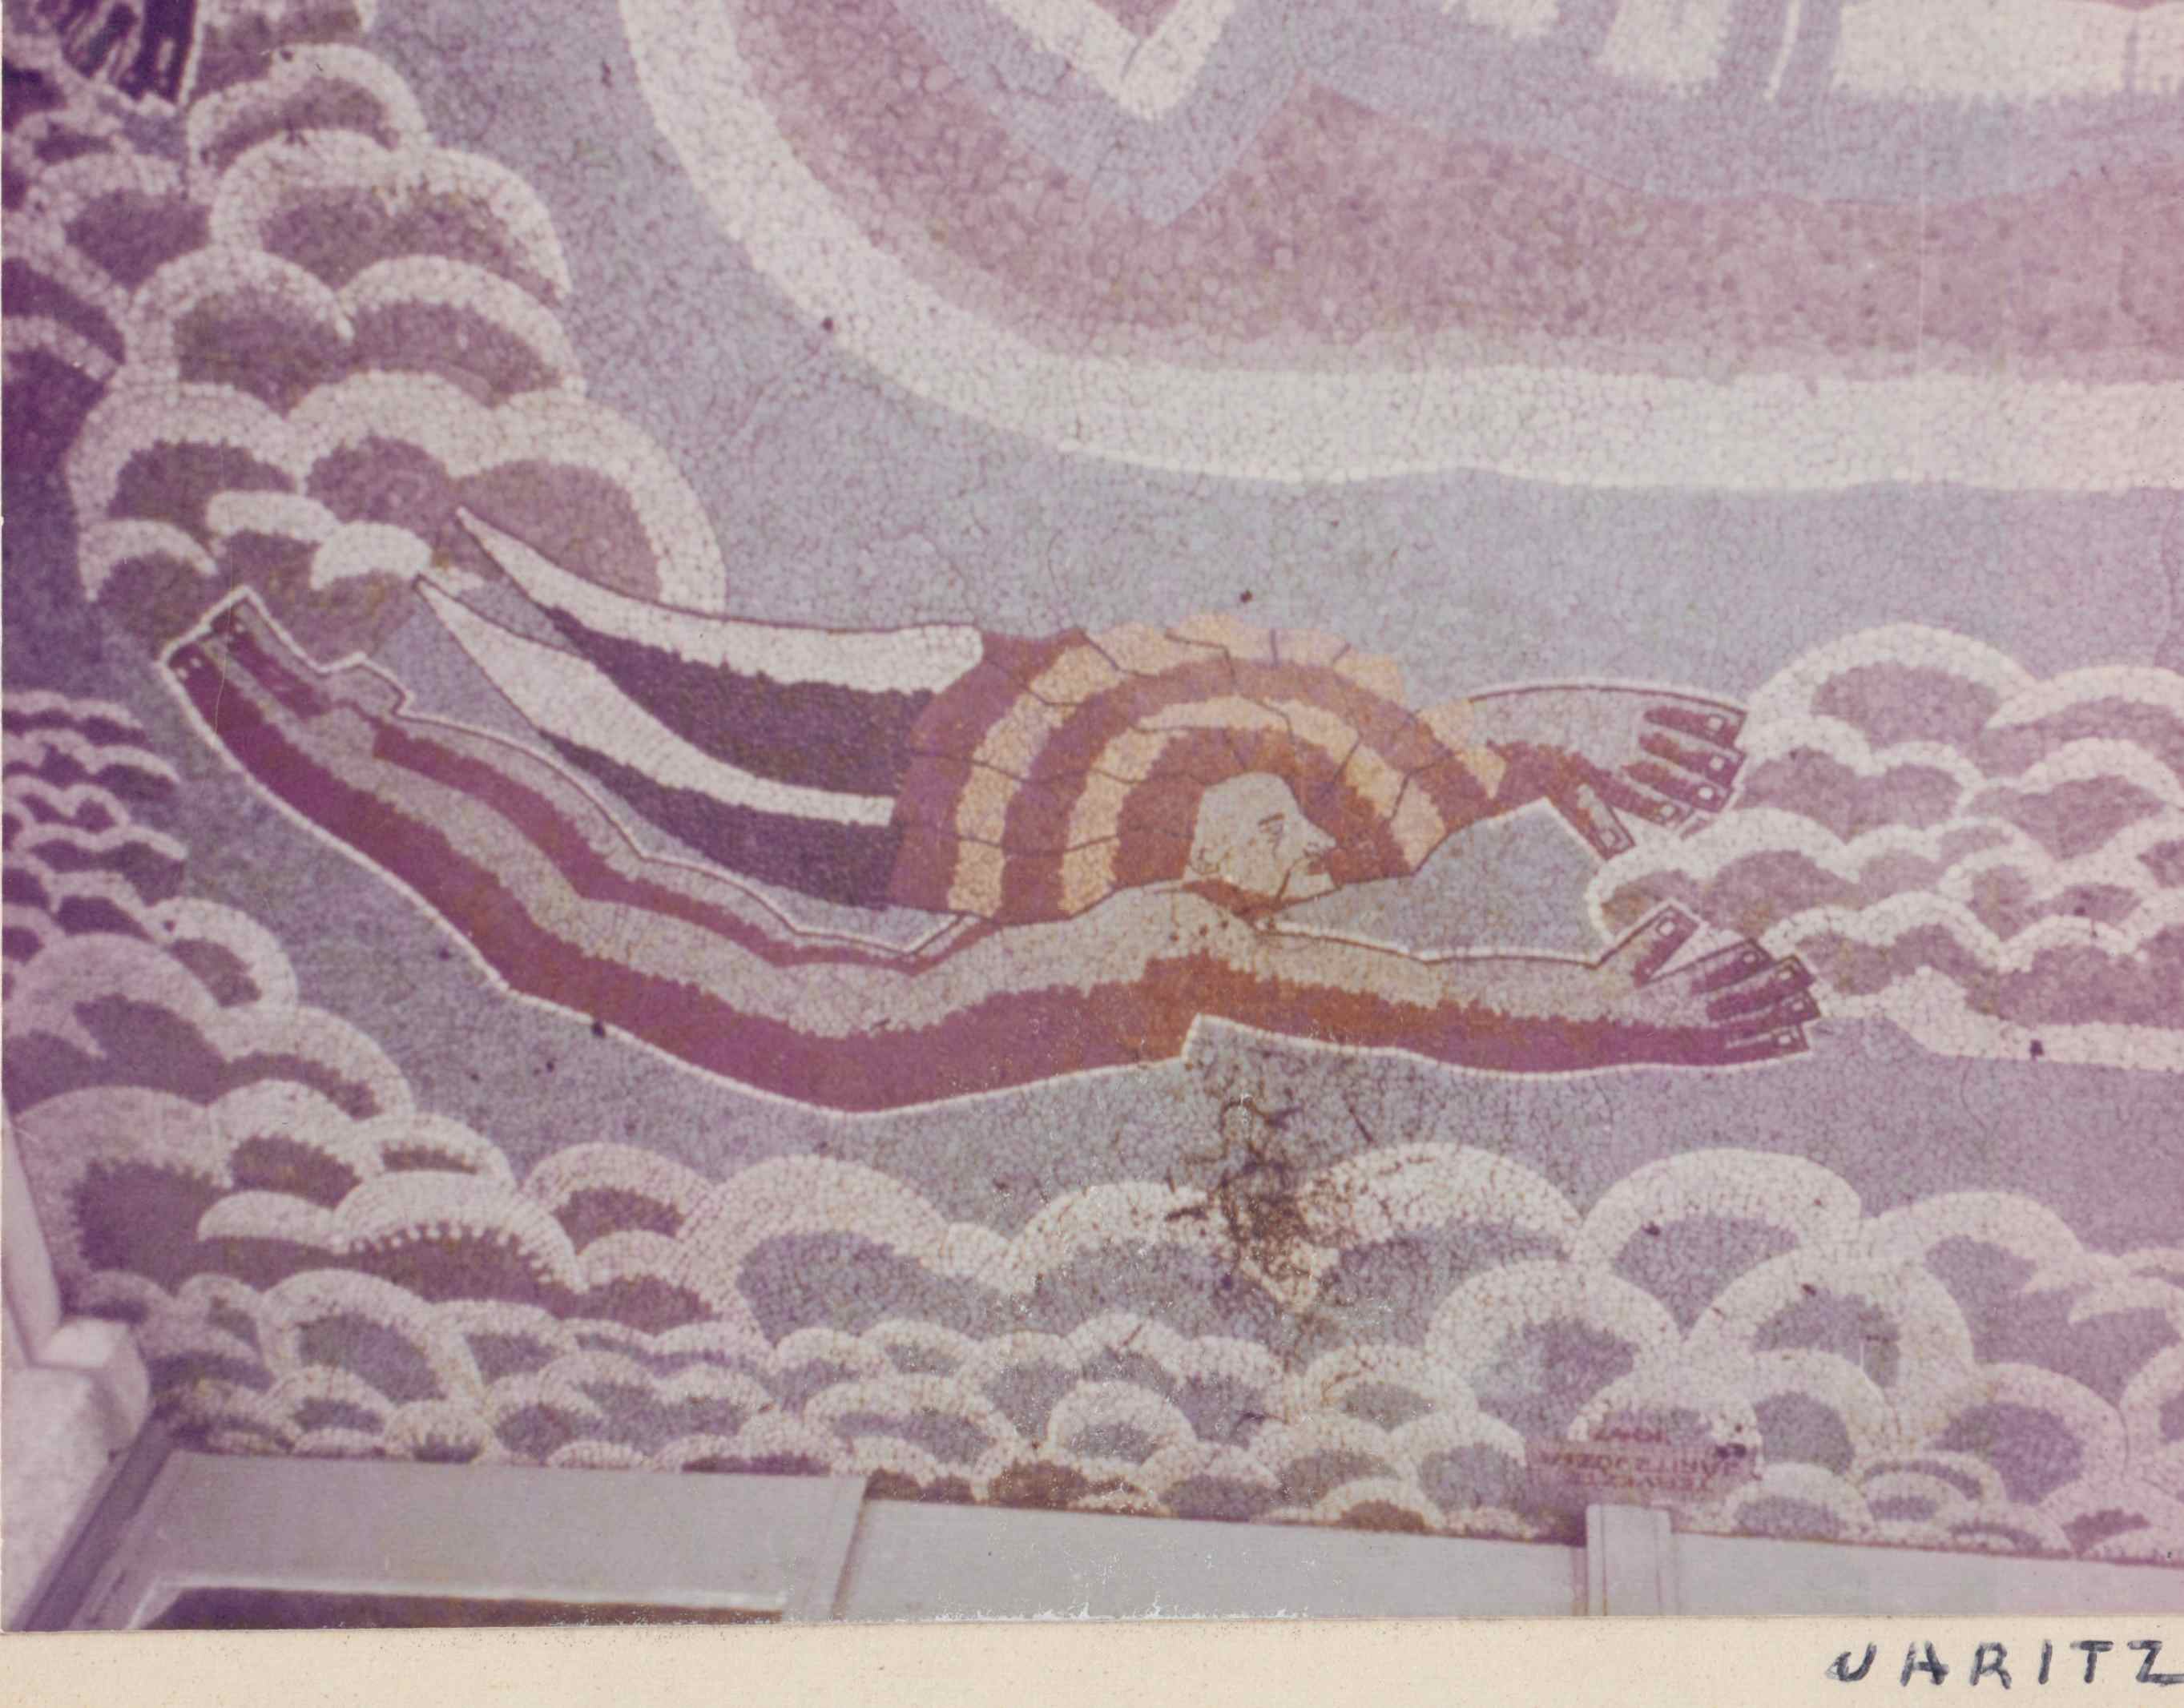 A képet Járitz István adta. Sajnos nem tudjuk pontosan ezek a mozaikok hol voltak, talán a terasz padlóját díszítették, de mindegyik Járitz Józsa alkotása.